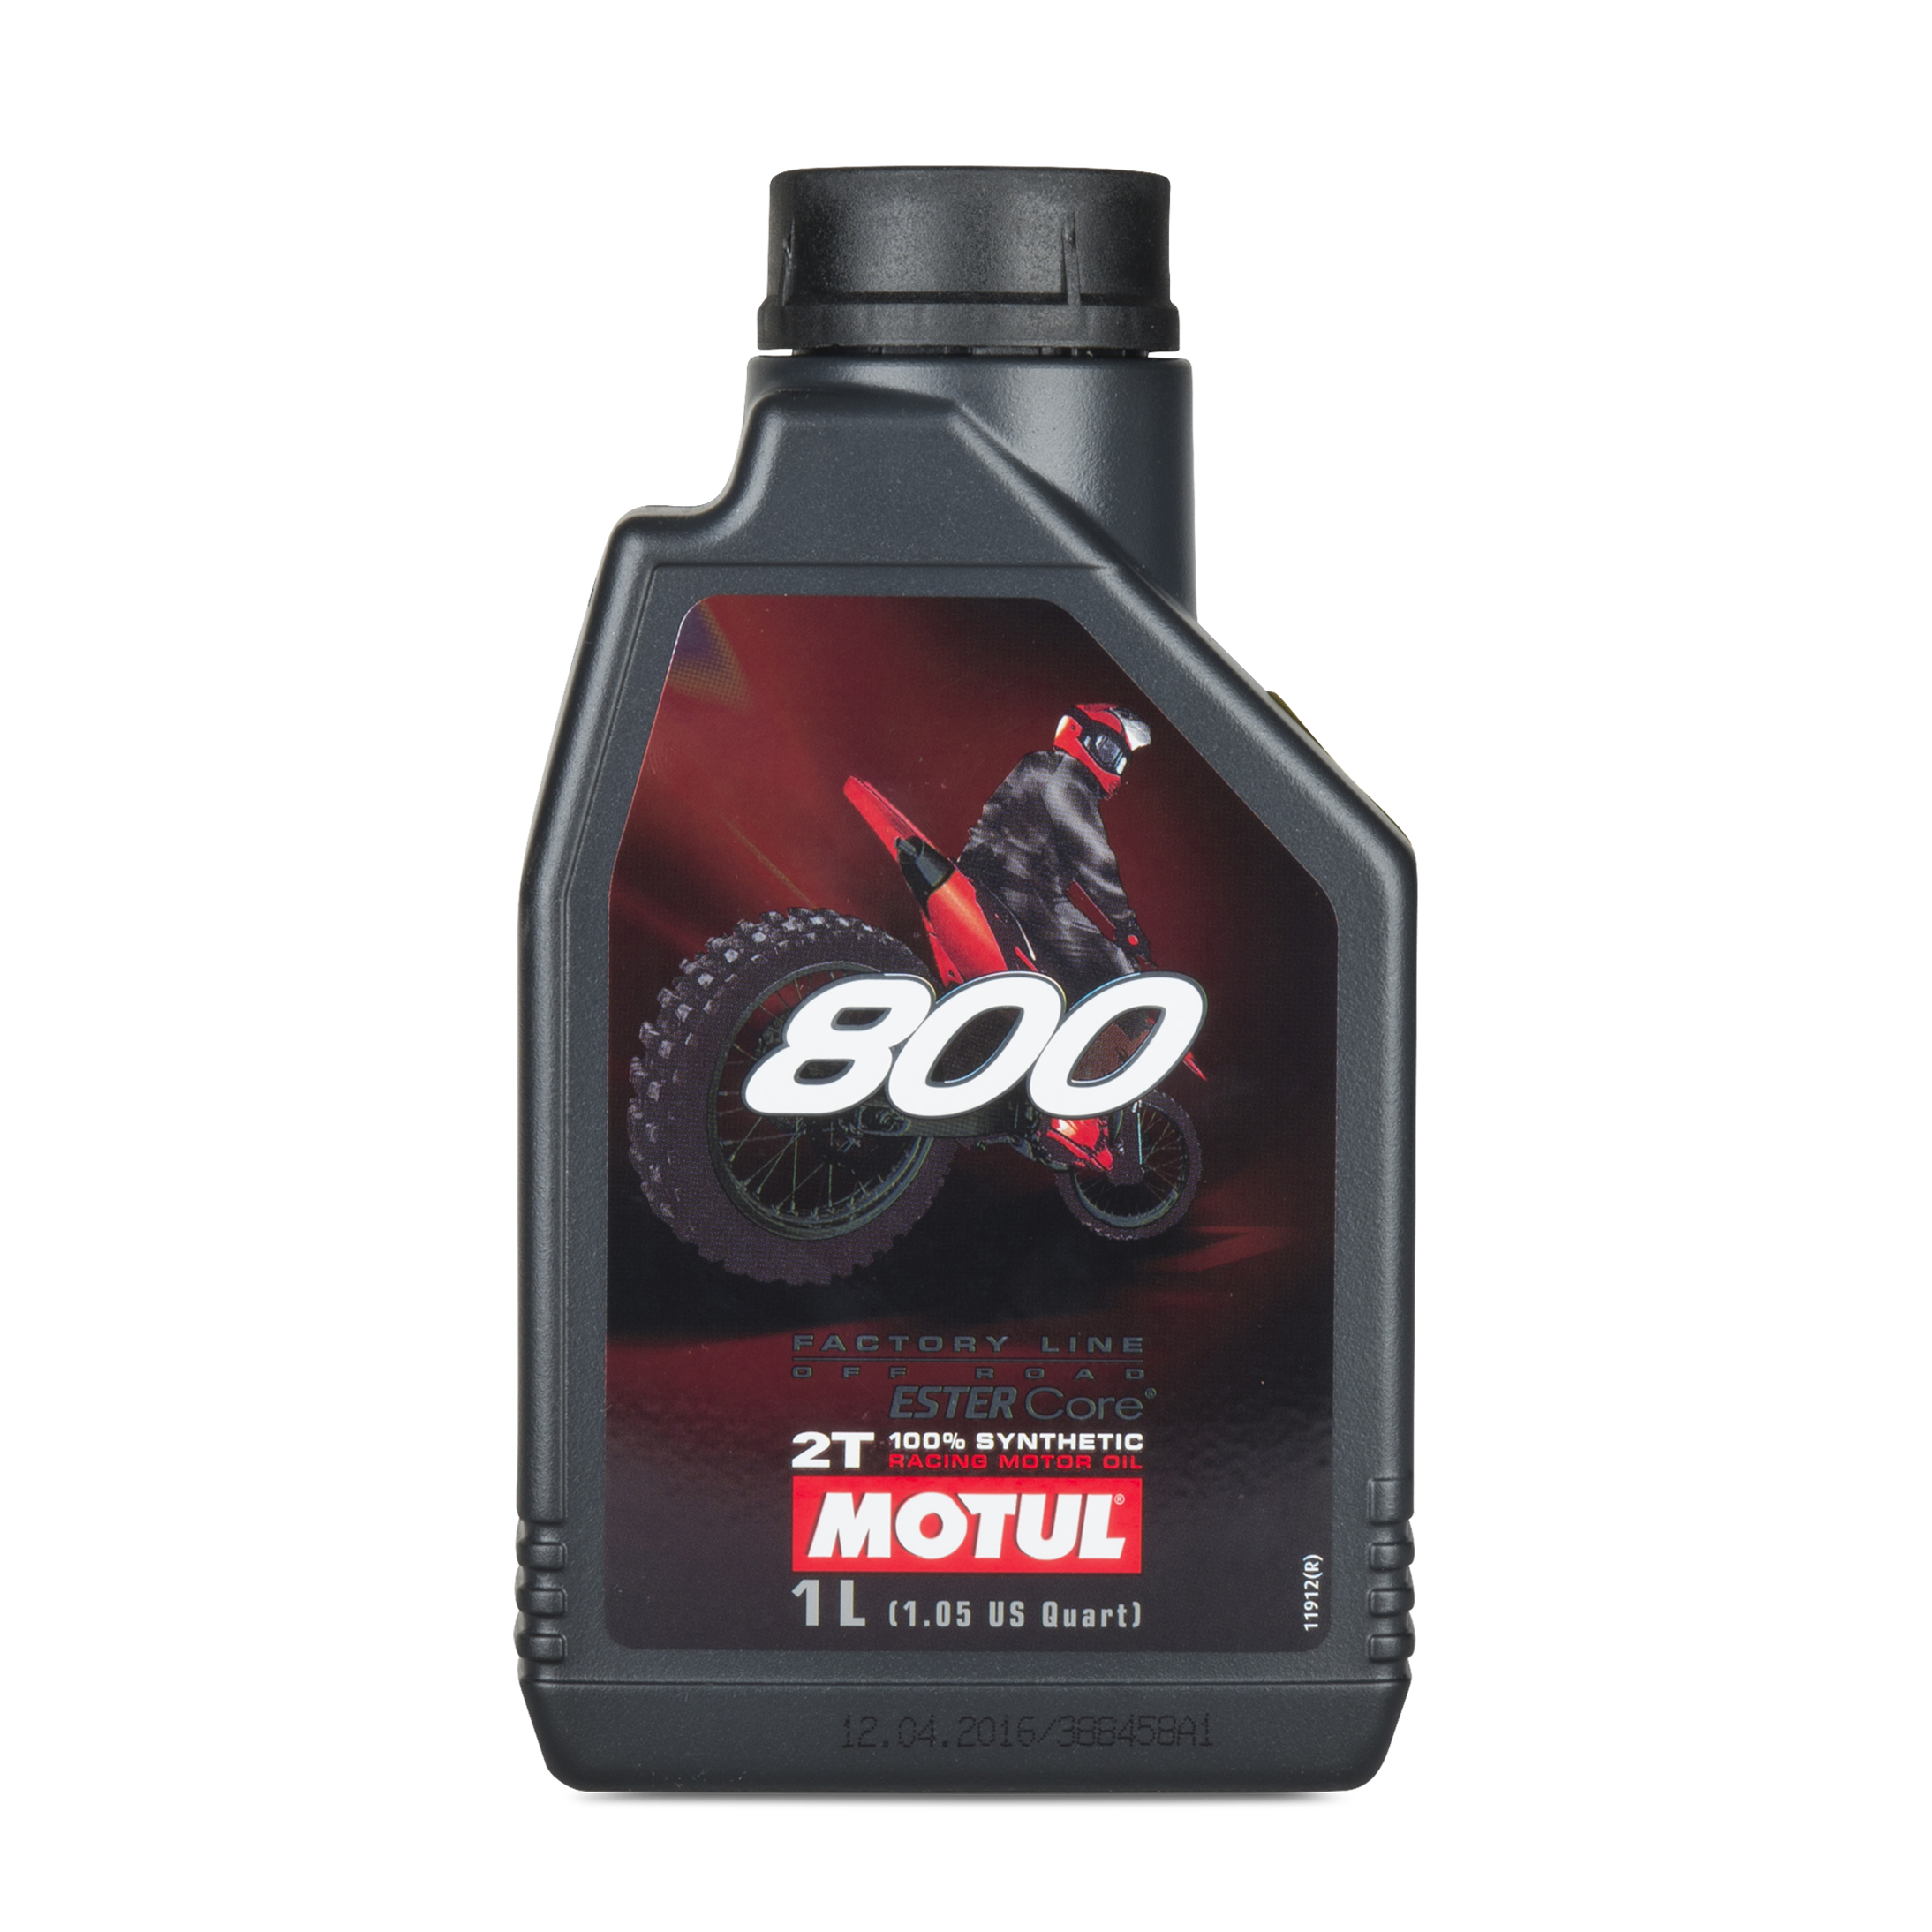 Motul 800 2T Factory Line Road Racing Synthetic 2-Stroke 12L Motor Oil 12 x  1L